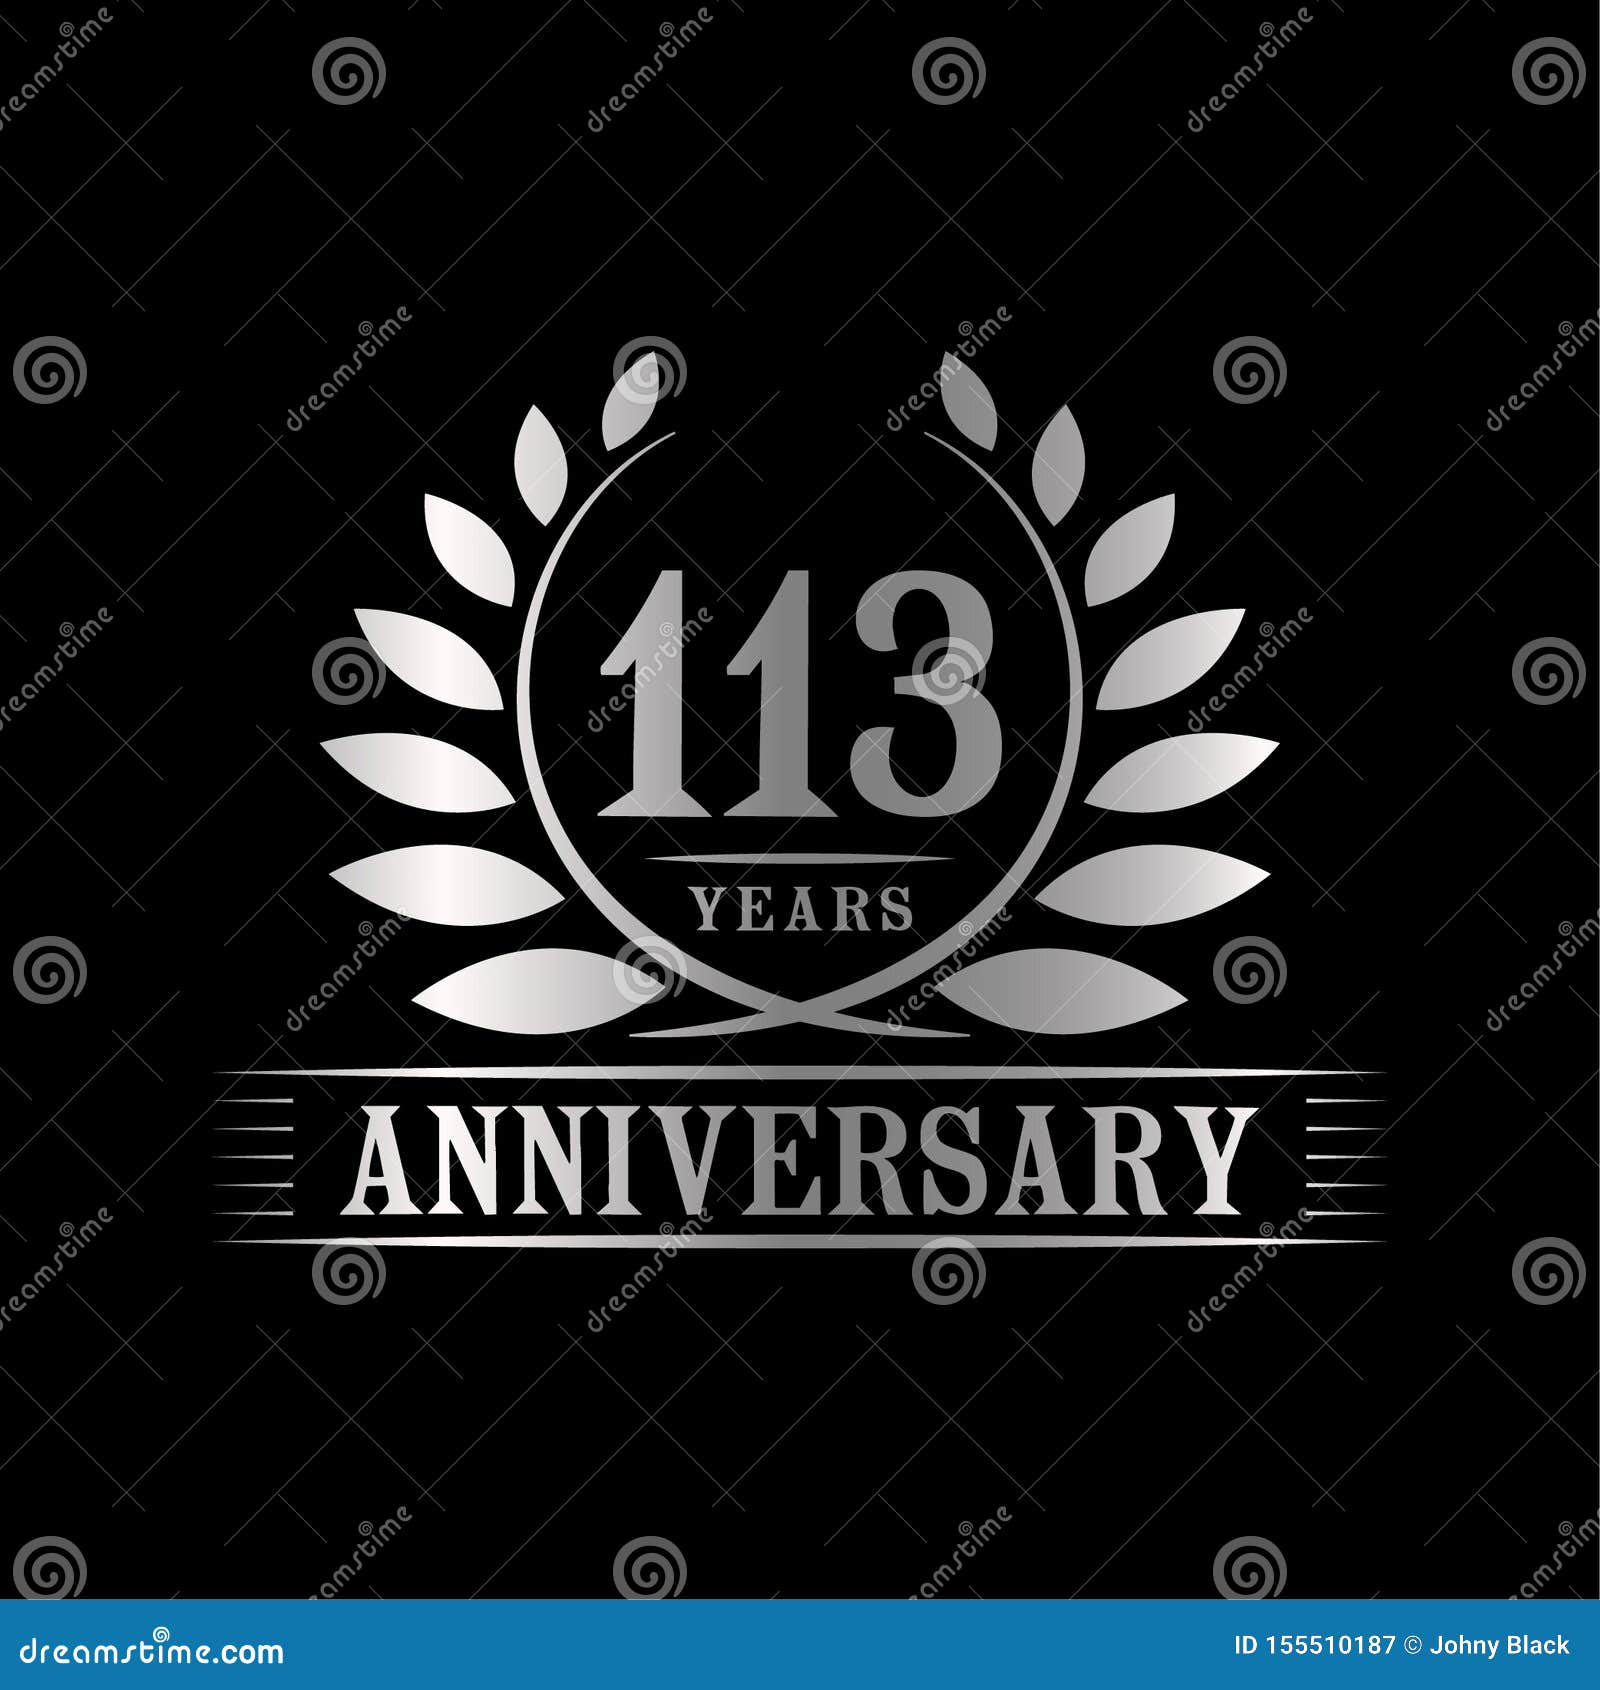 113 Years Anniversary Celebration Logo 113rd Anniversary Luxury Design